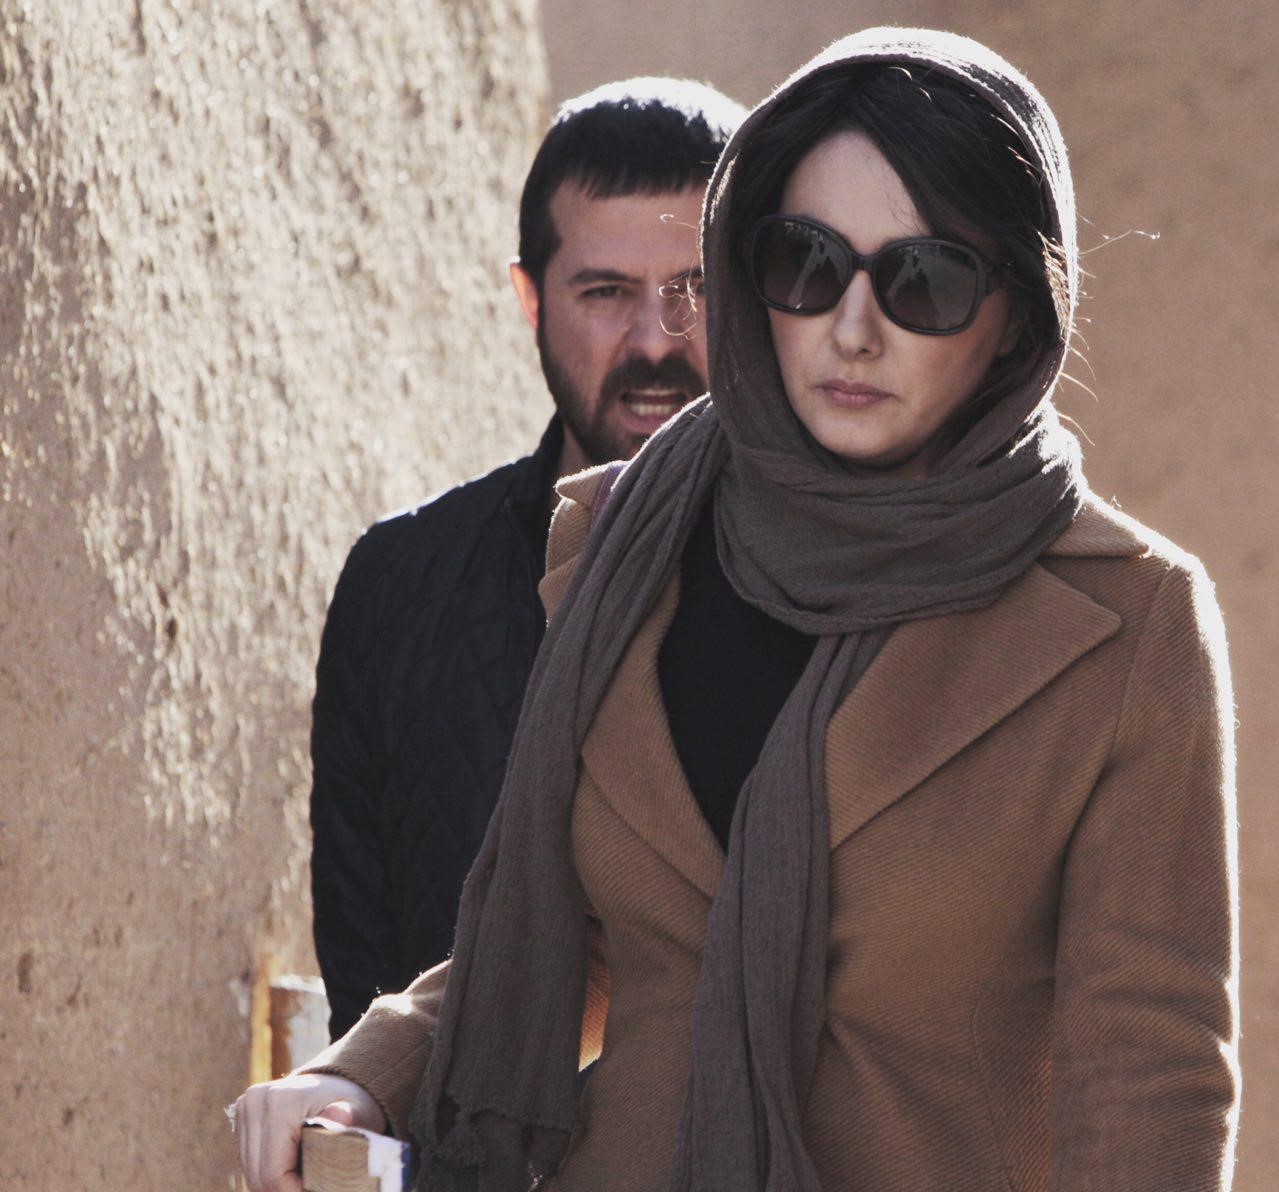  فیلم سینمایی مادری با حضور هومن سیدی و هانیه توسلی